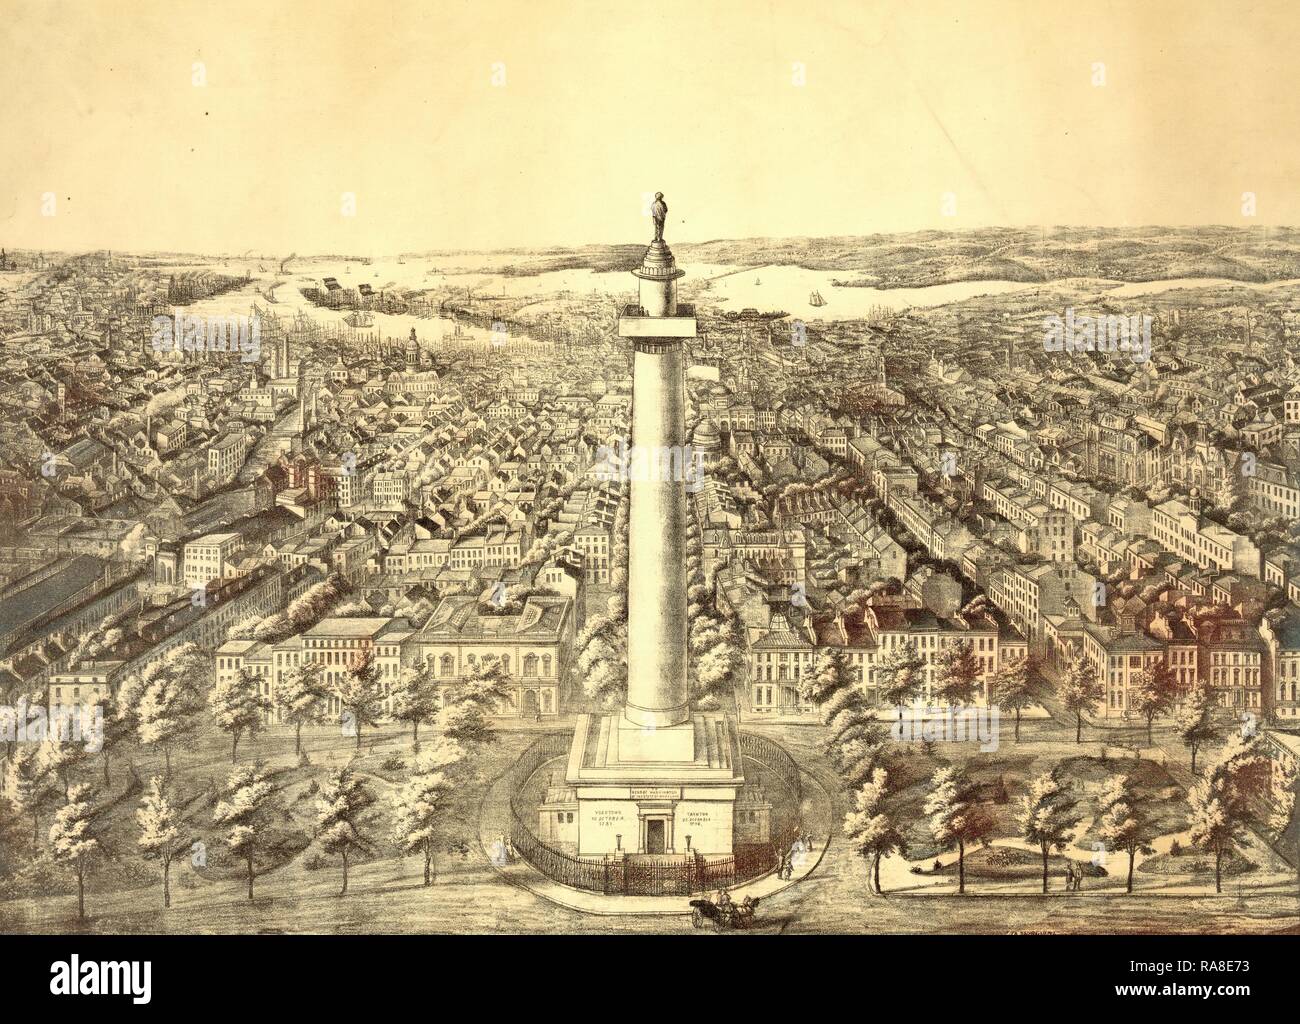 La città di Città di Baltimore, Md. nel 1880 vista dal monumento di Washington guardando verso sud A. Sachse & Co. Lithographers, noi reinventato Foto Stock